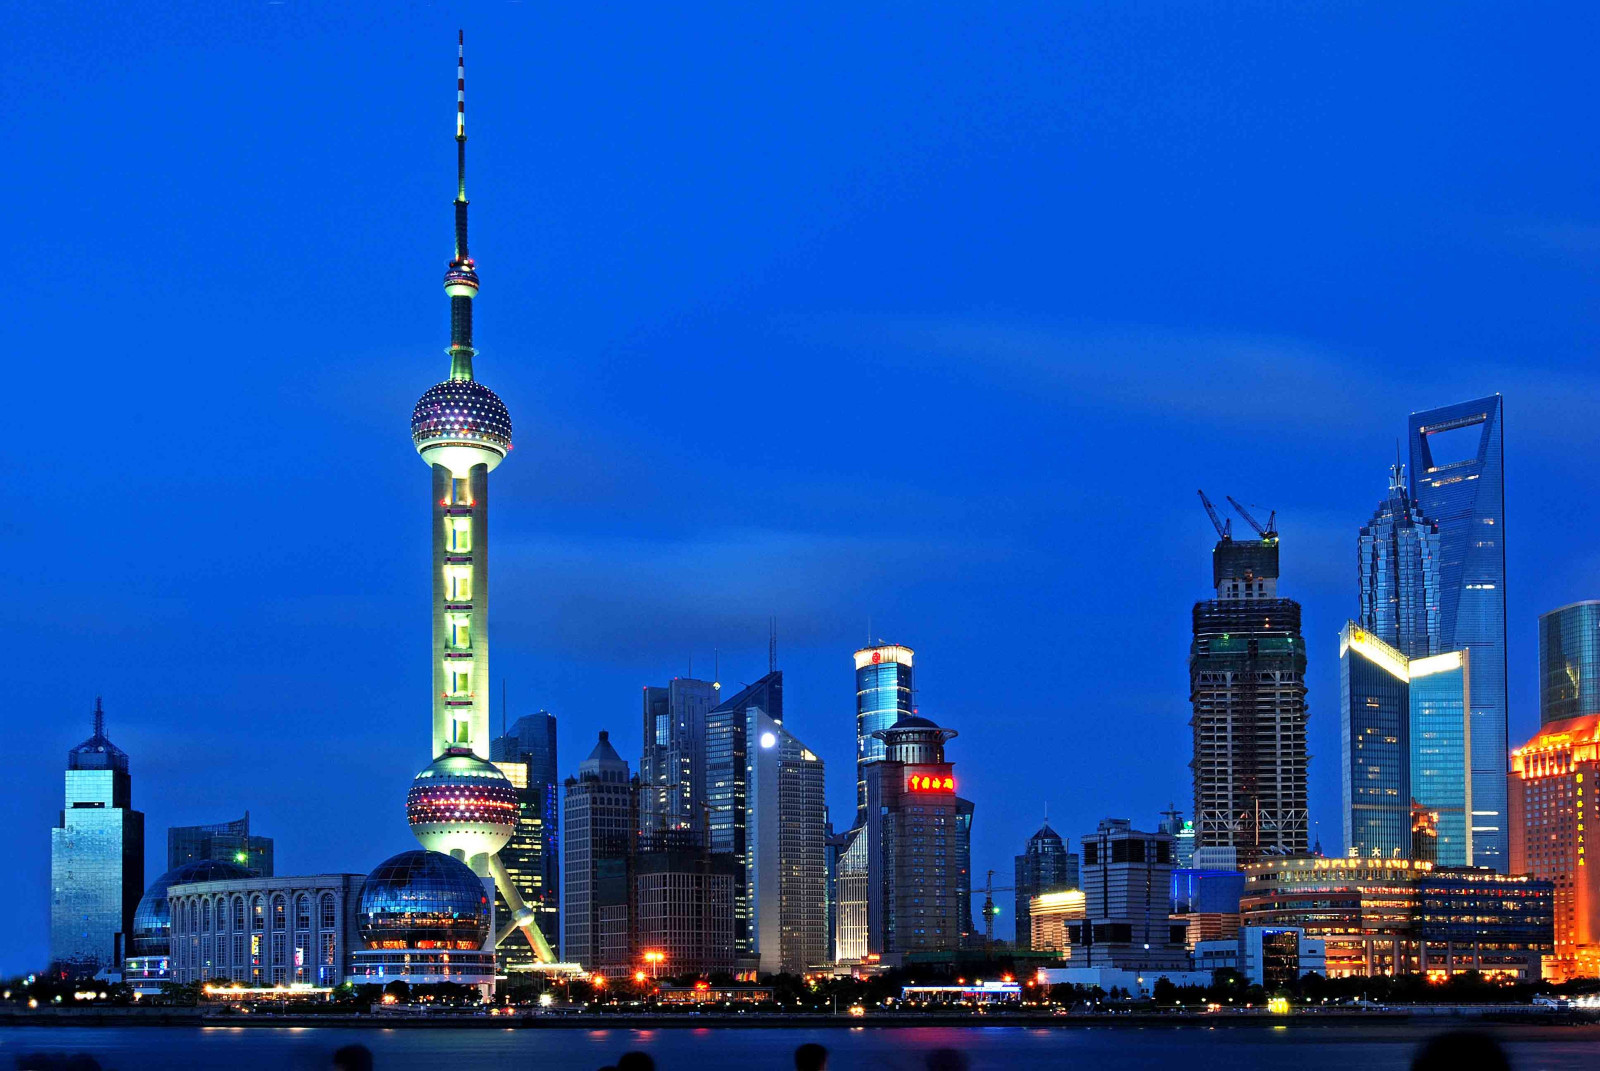 上海大美国际旅行社有限公司